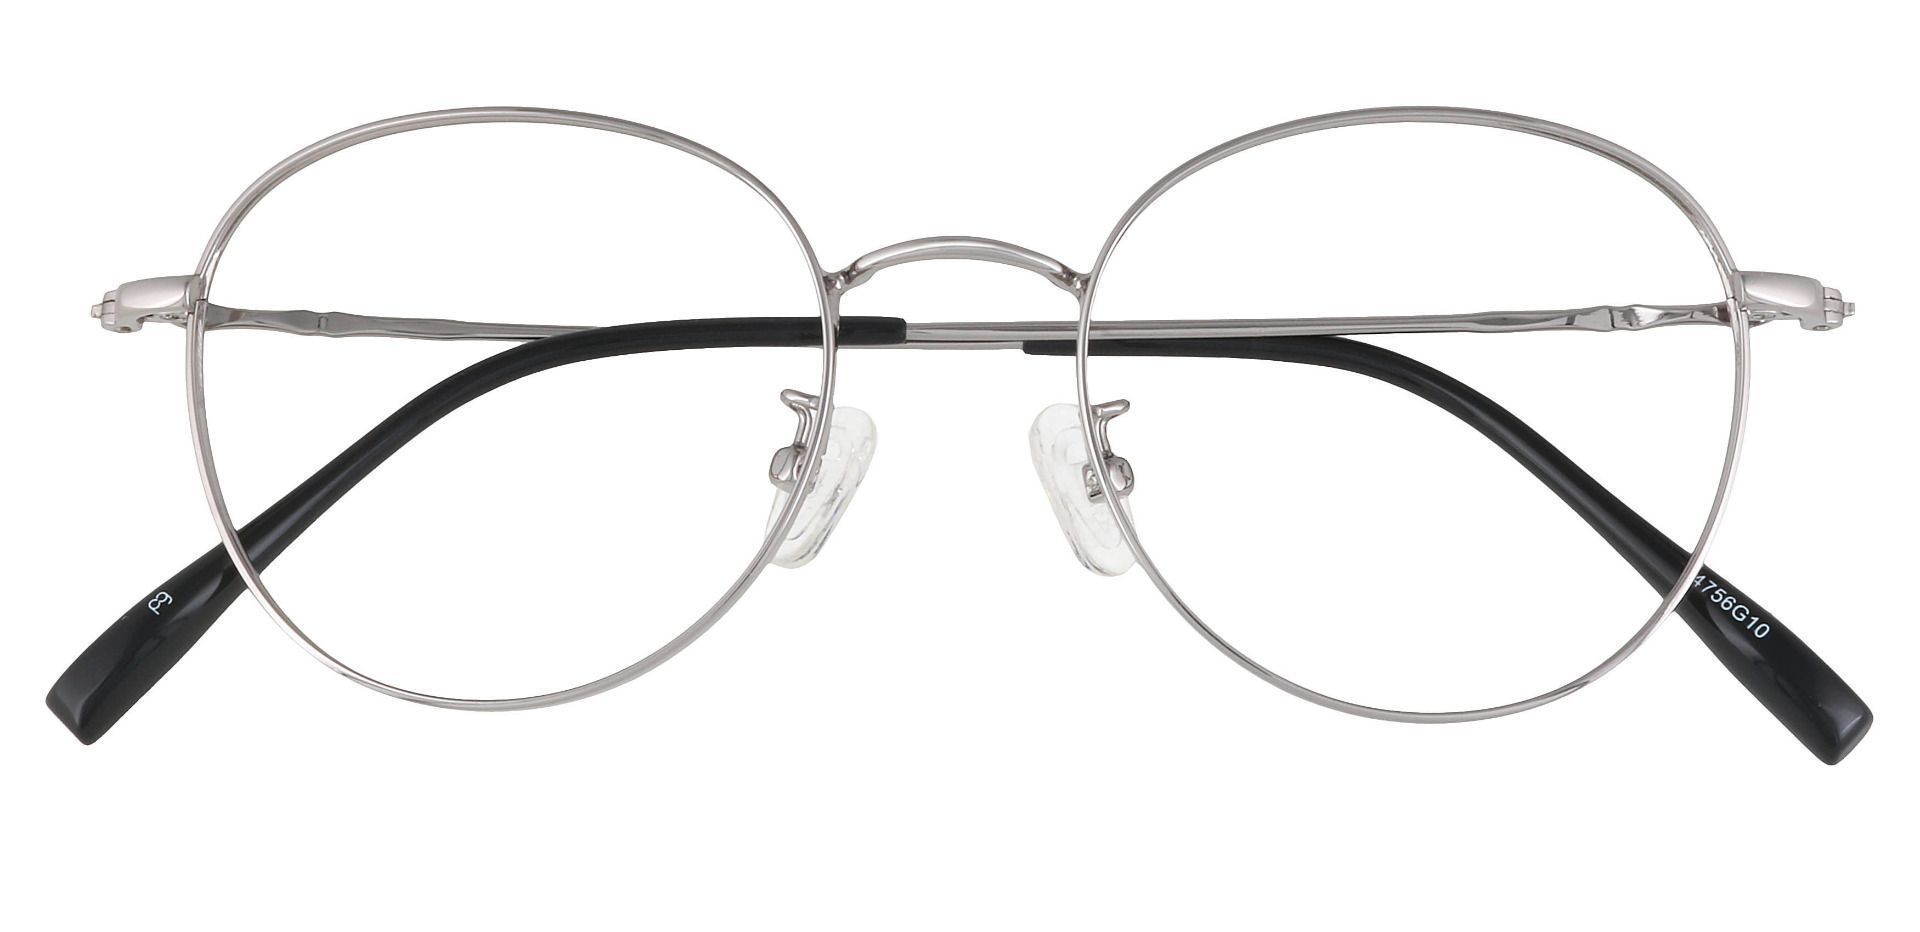 Astoria Oval Prescription Glasses - Silver